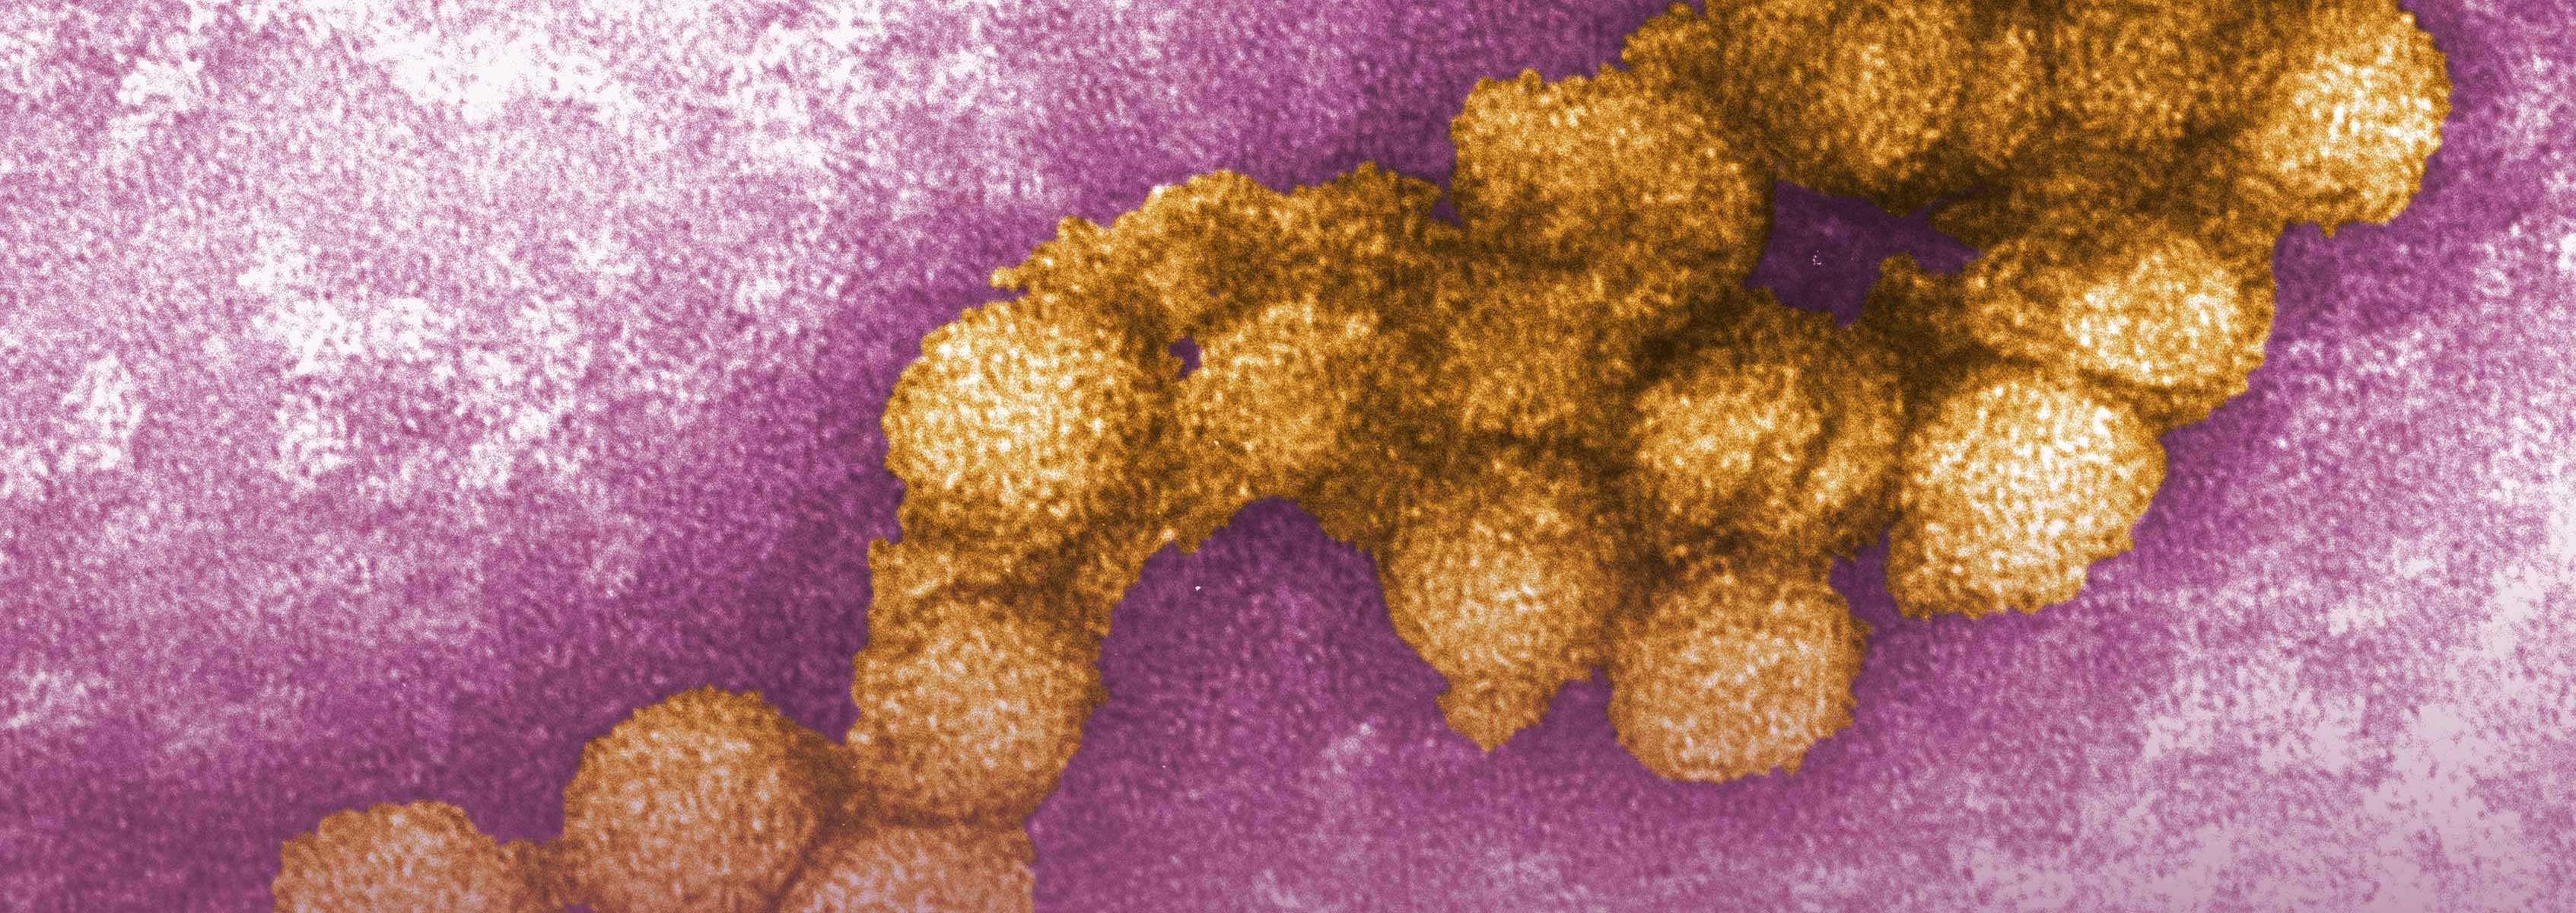 Genomics of West Nile Virus | J. Craig Venter Institute